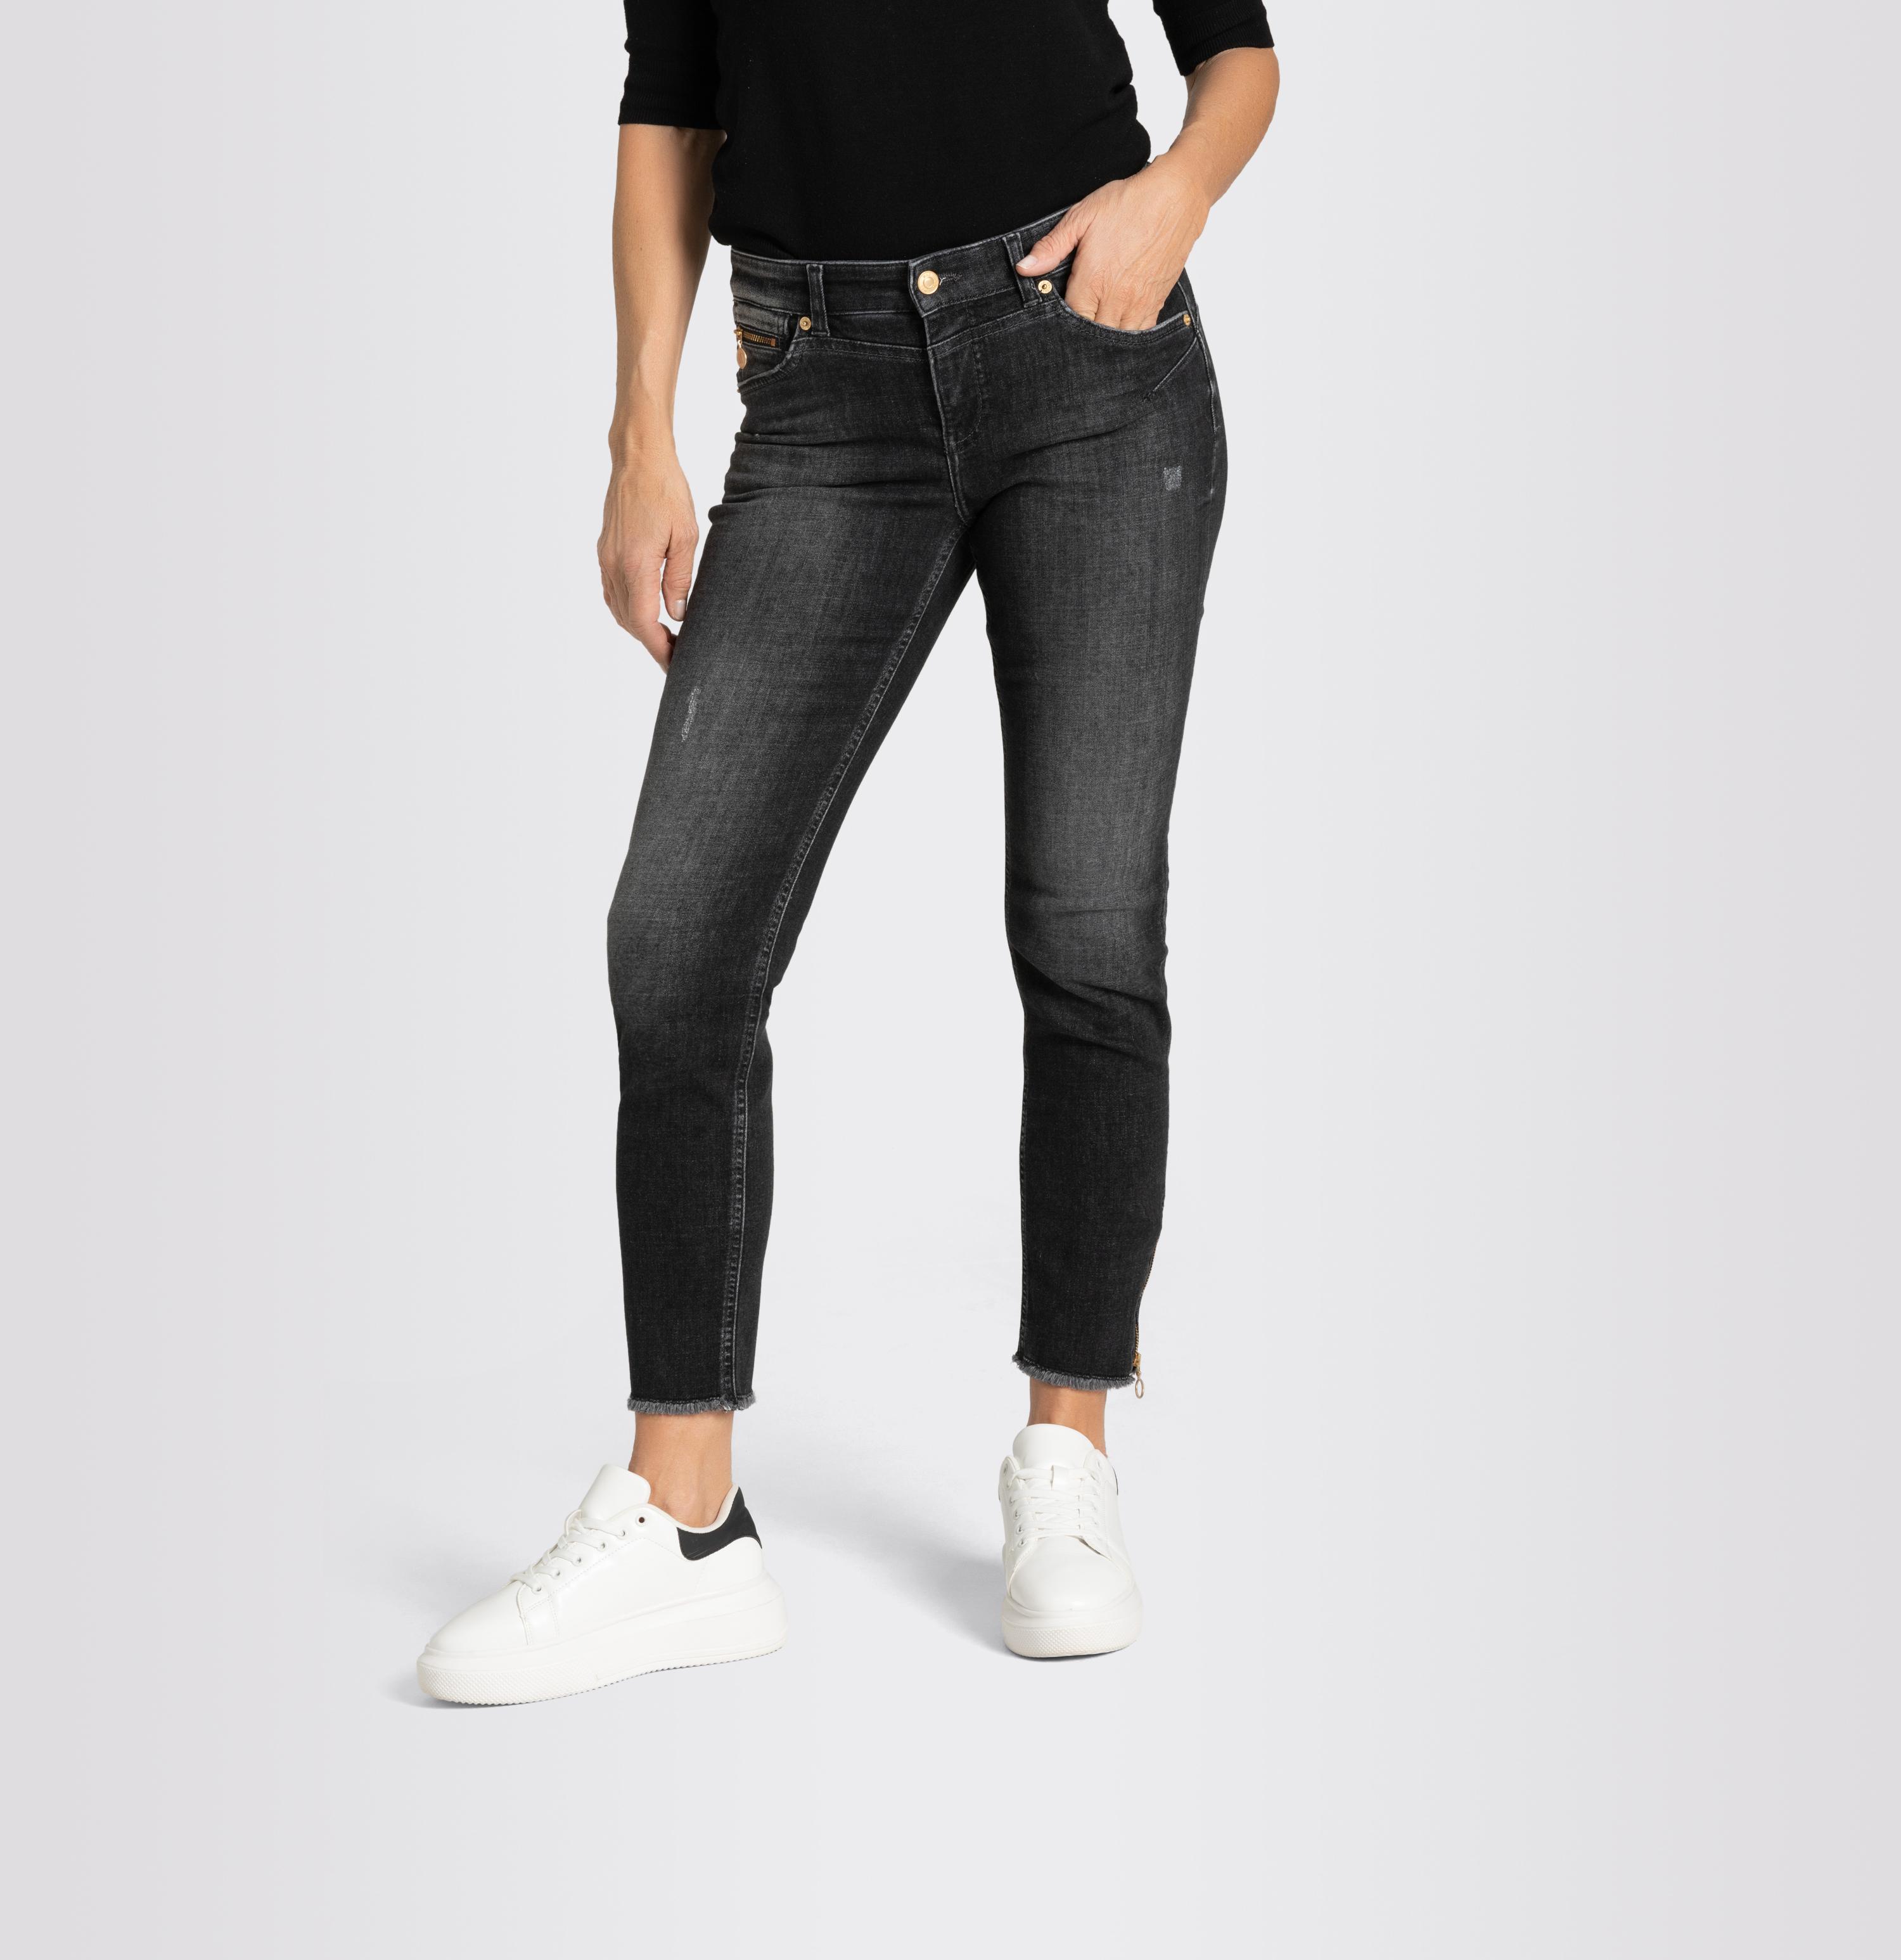 Women Pants, Rich Chic, Jeans MAC - grey Light, Shop D927 | PT Slim